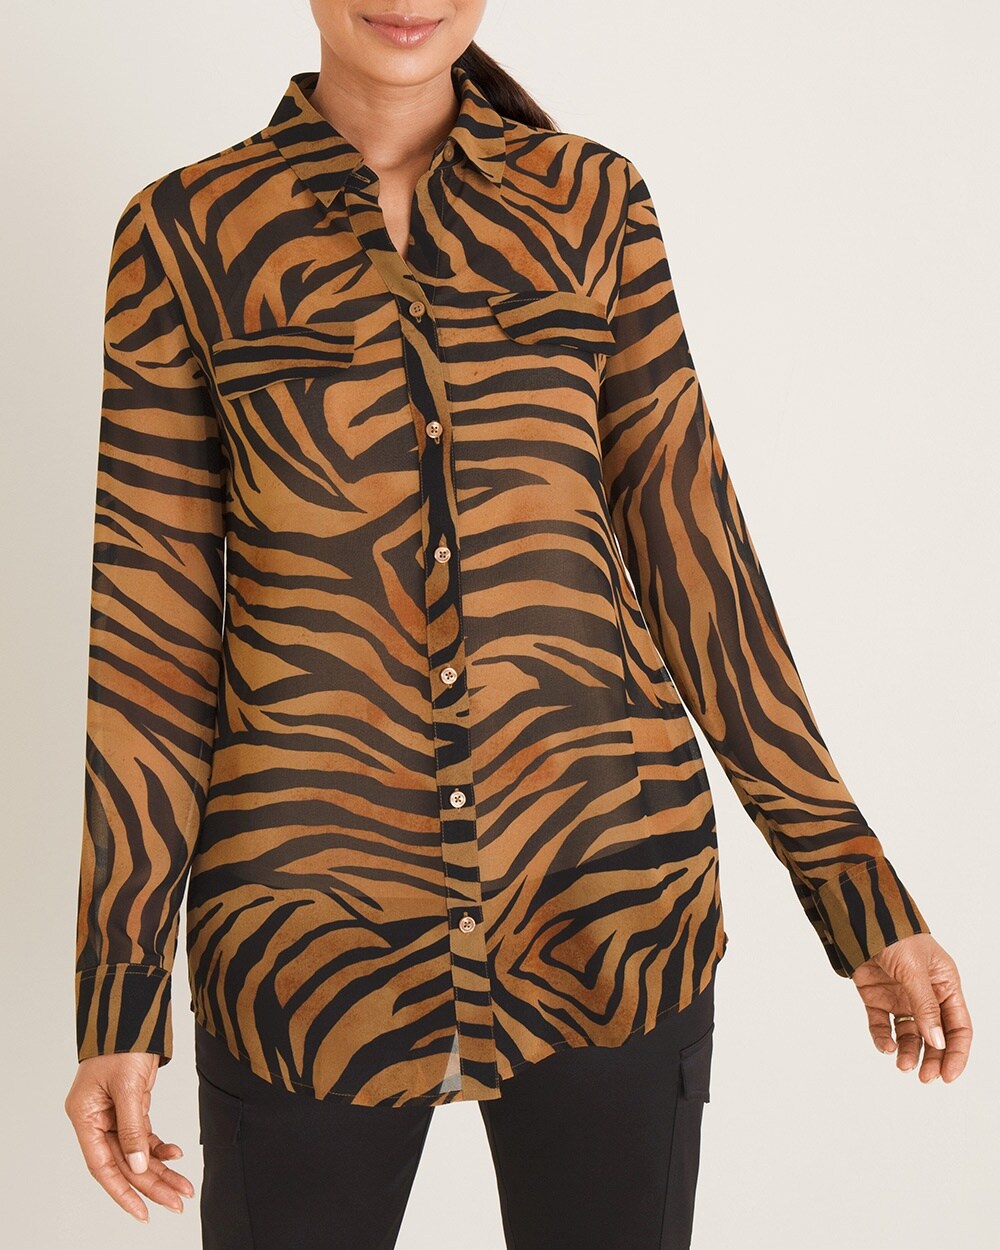 feminine tiger shirt